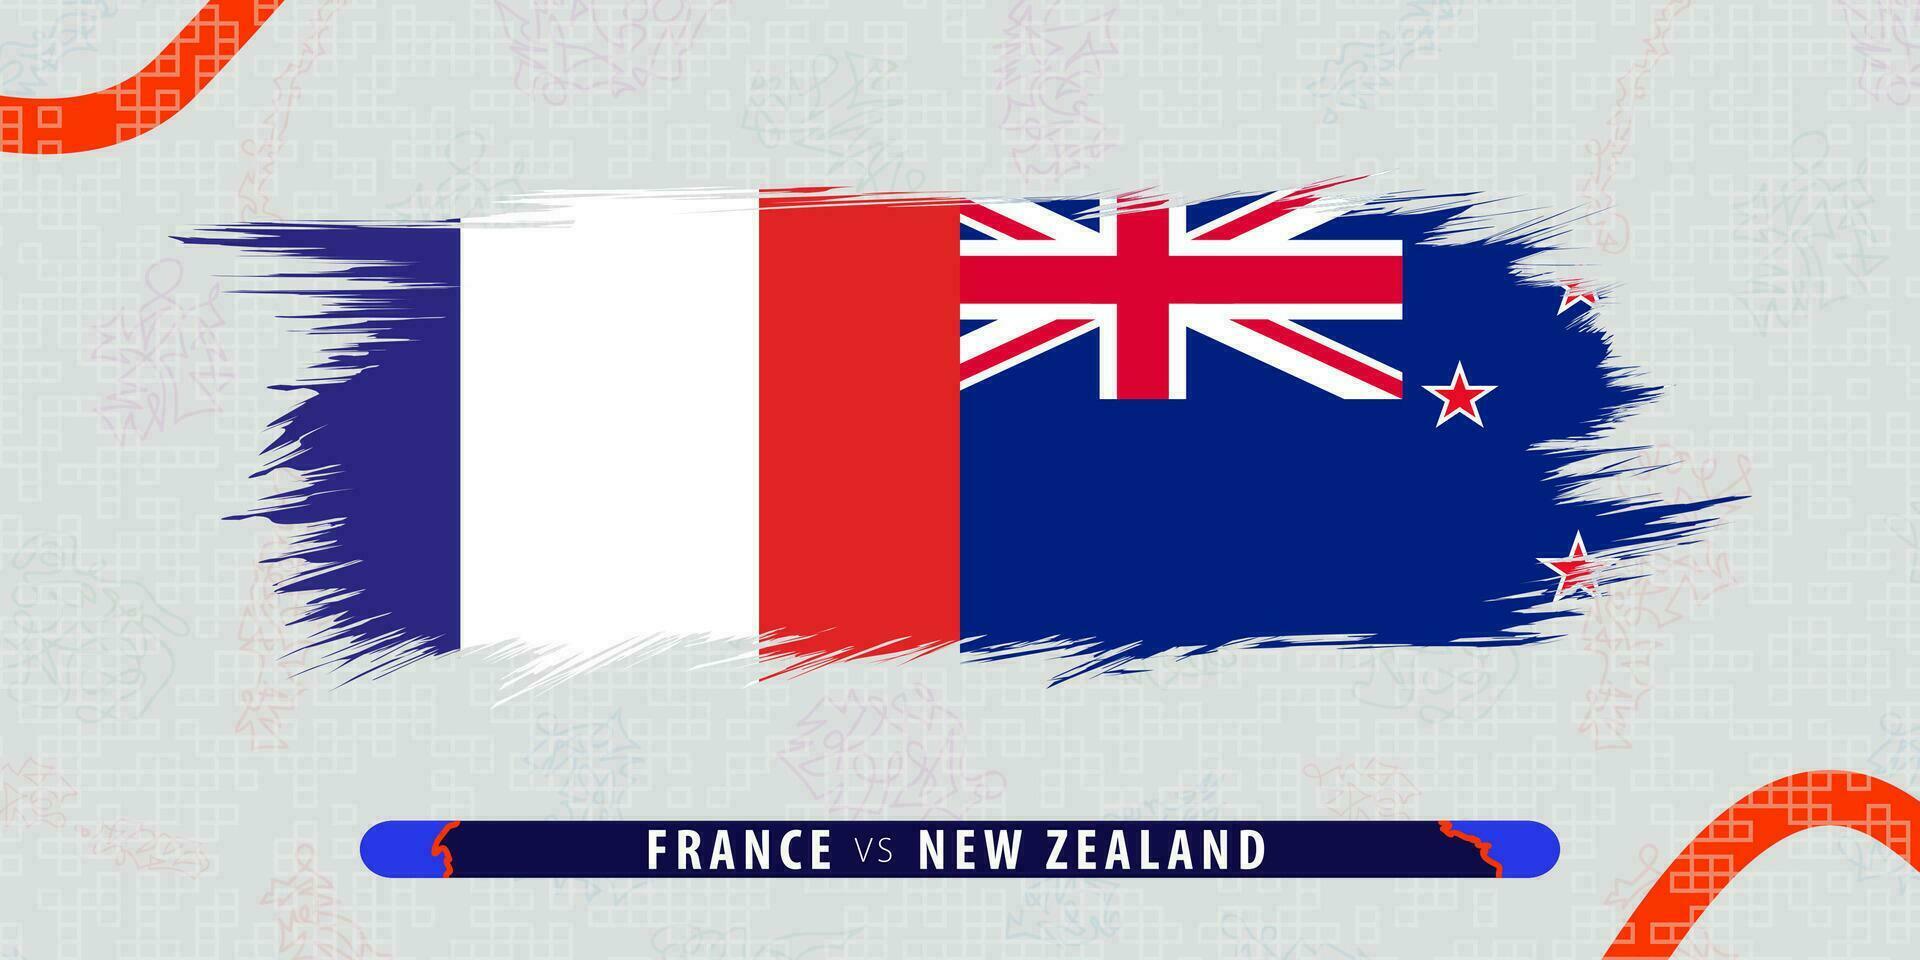 Frankreich vs. Neu Neuseeland, International Rugby Spiel Illustration im Pinselstrich Stil. abstrakt grungy Symbol zum Rugby passen. vektor